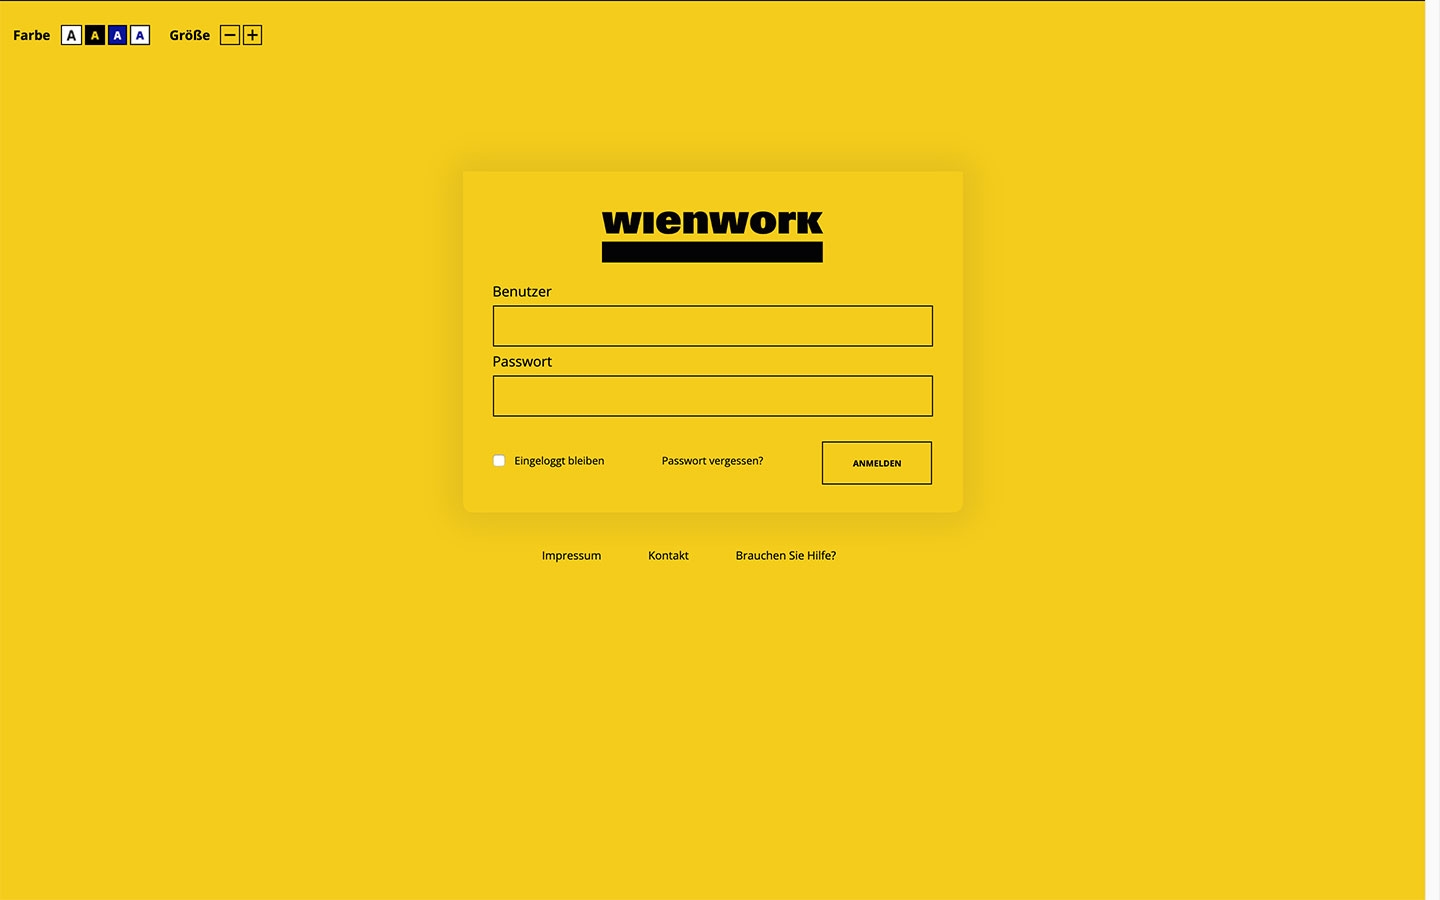 Wien Work Intranet | intranet.wienwork.at | 2018 (Screen Only 02) © echonet communication